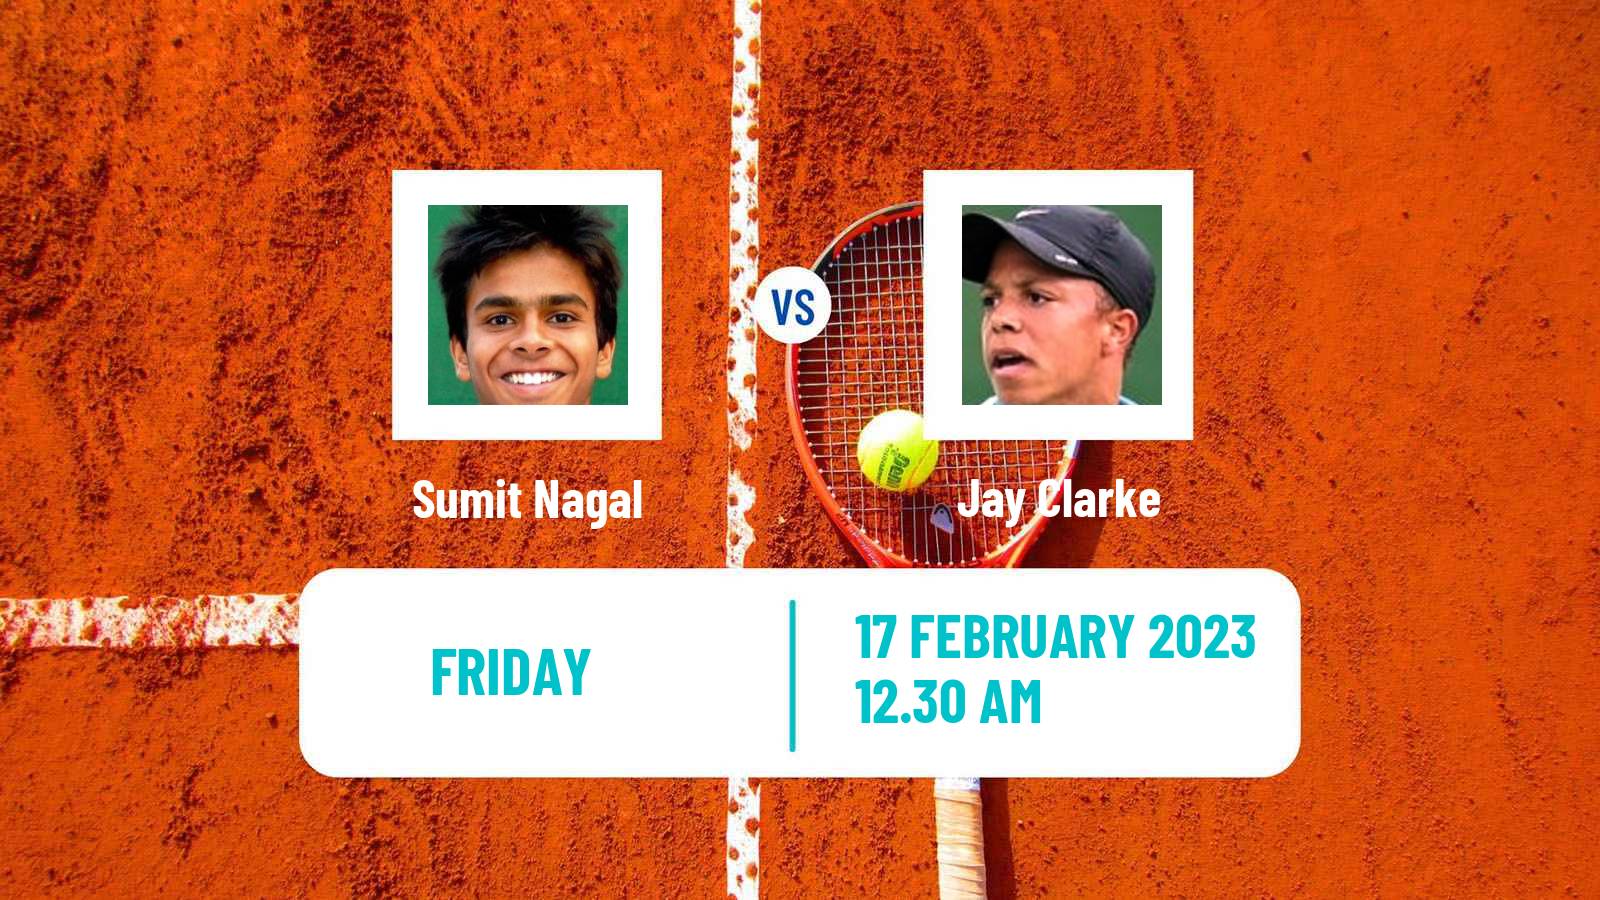 Tennis ATP Challenger Sumit Nagal - Jay Clarke